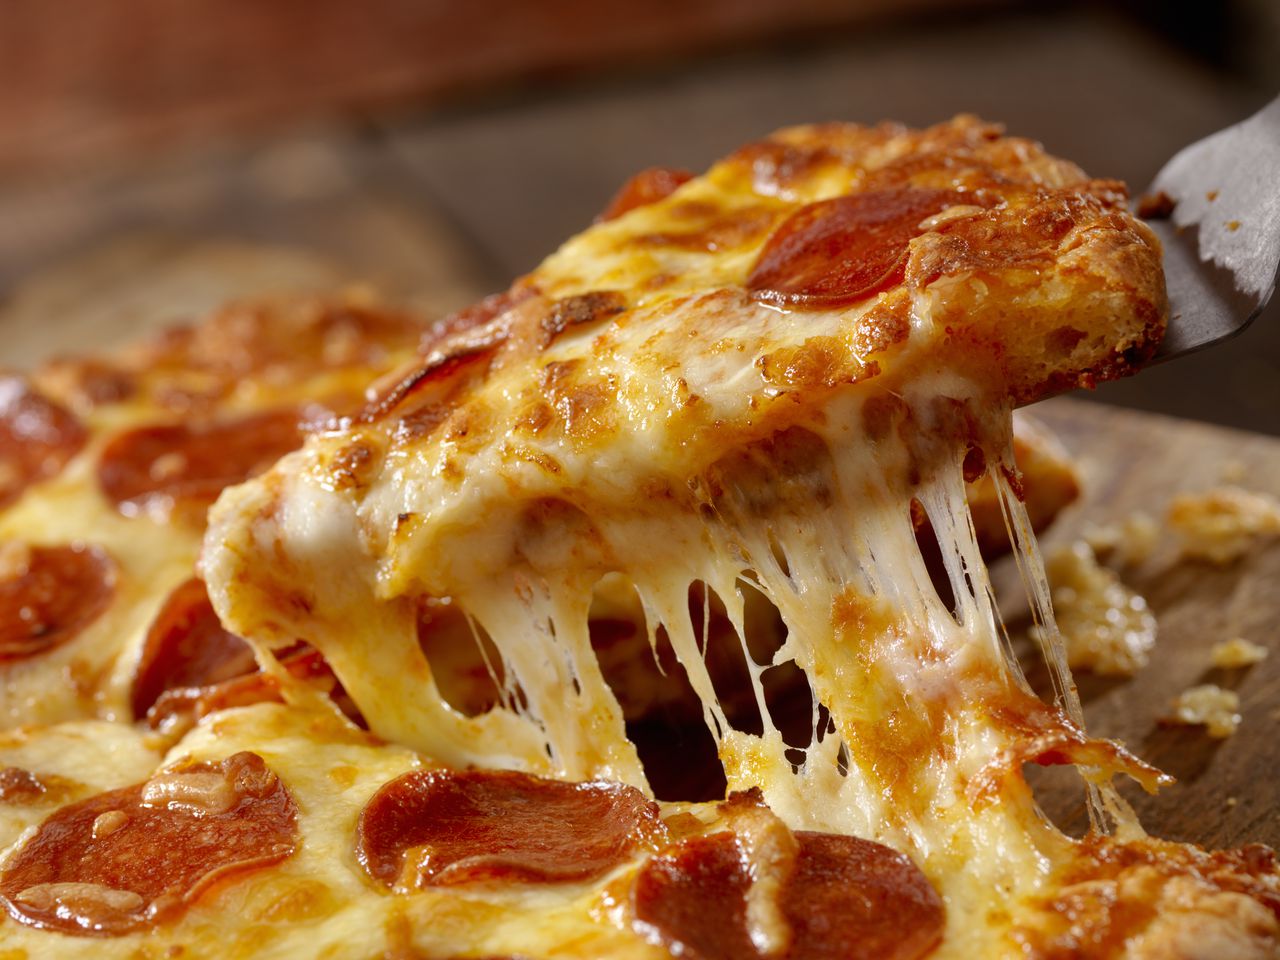 Las pizzas entran dentro del grupo de alimentos sobresaturados no saludables